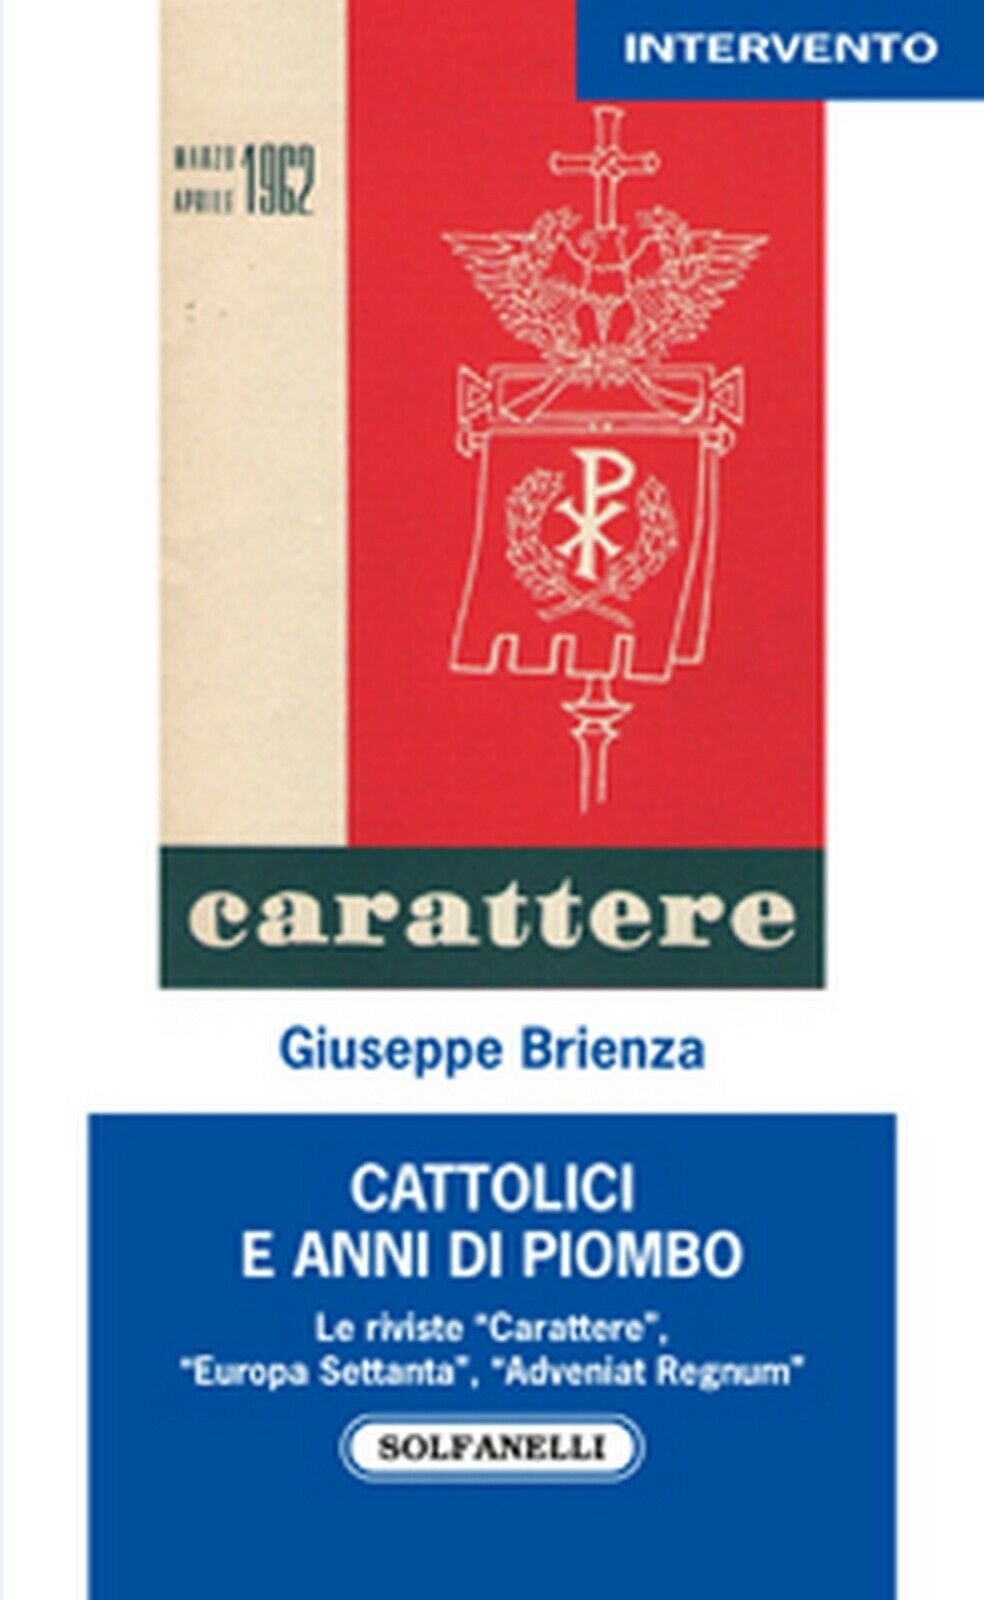 CATTOLICI E ANNI DI PIOMBO  di Giuseppe Brienza,  Solfanelli Edizioni